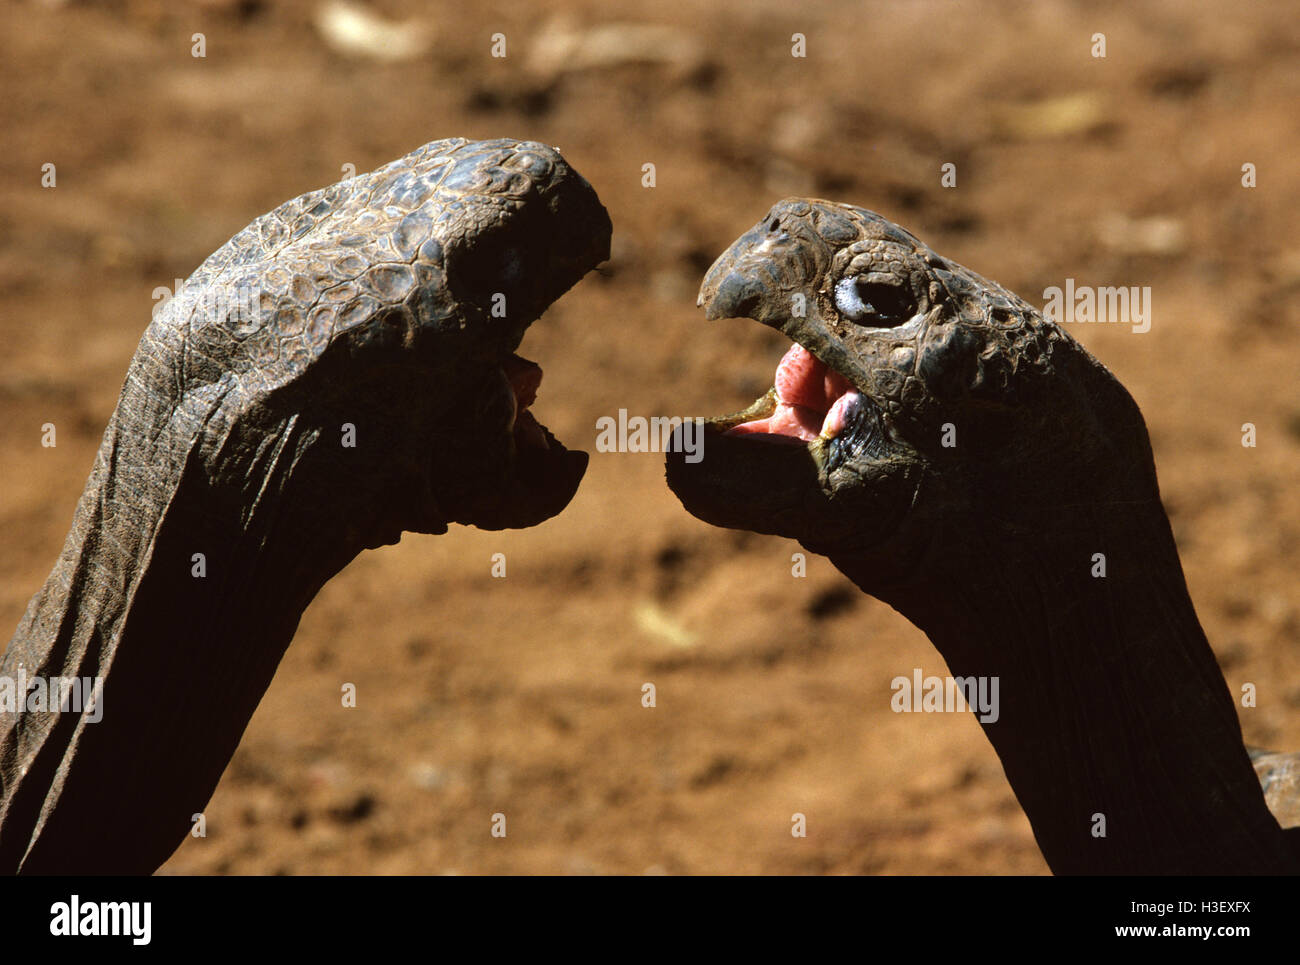 Las tortugas gigantes de Galápagos (Geochelone sp.) Foto de stock